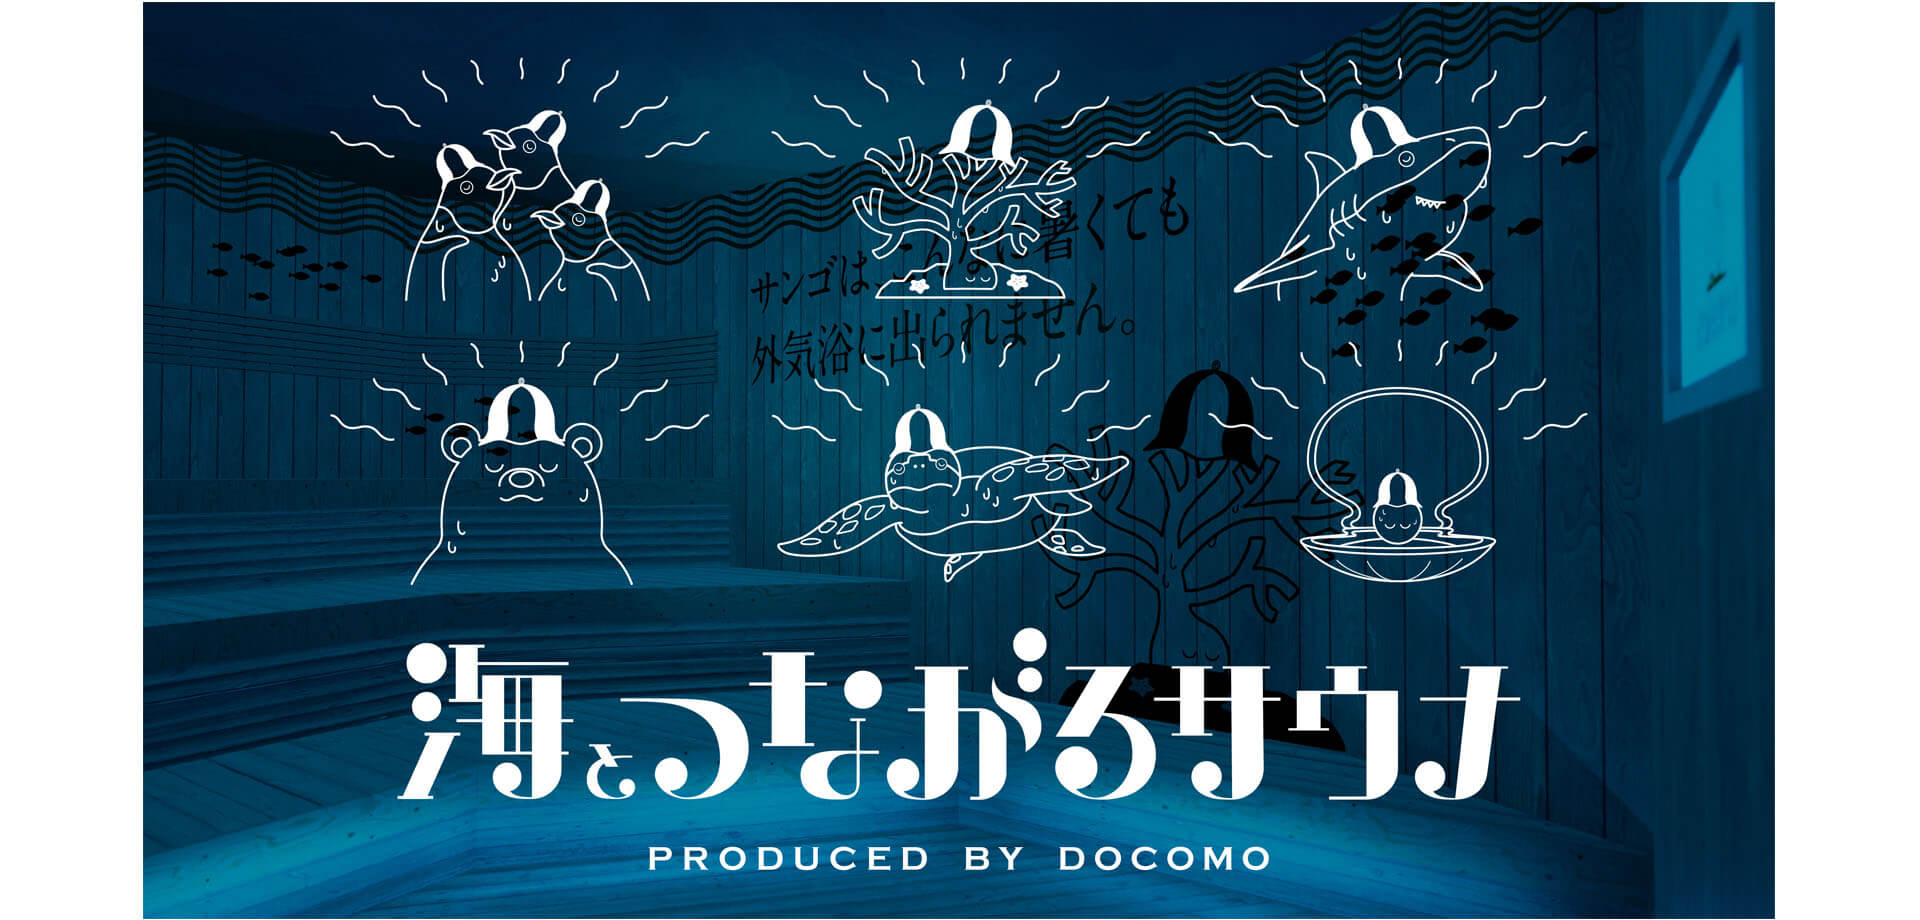 海とつながるサウナ PRODUCED BY DOCOMO 両国湯屋 江戸遊